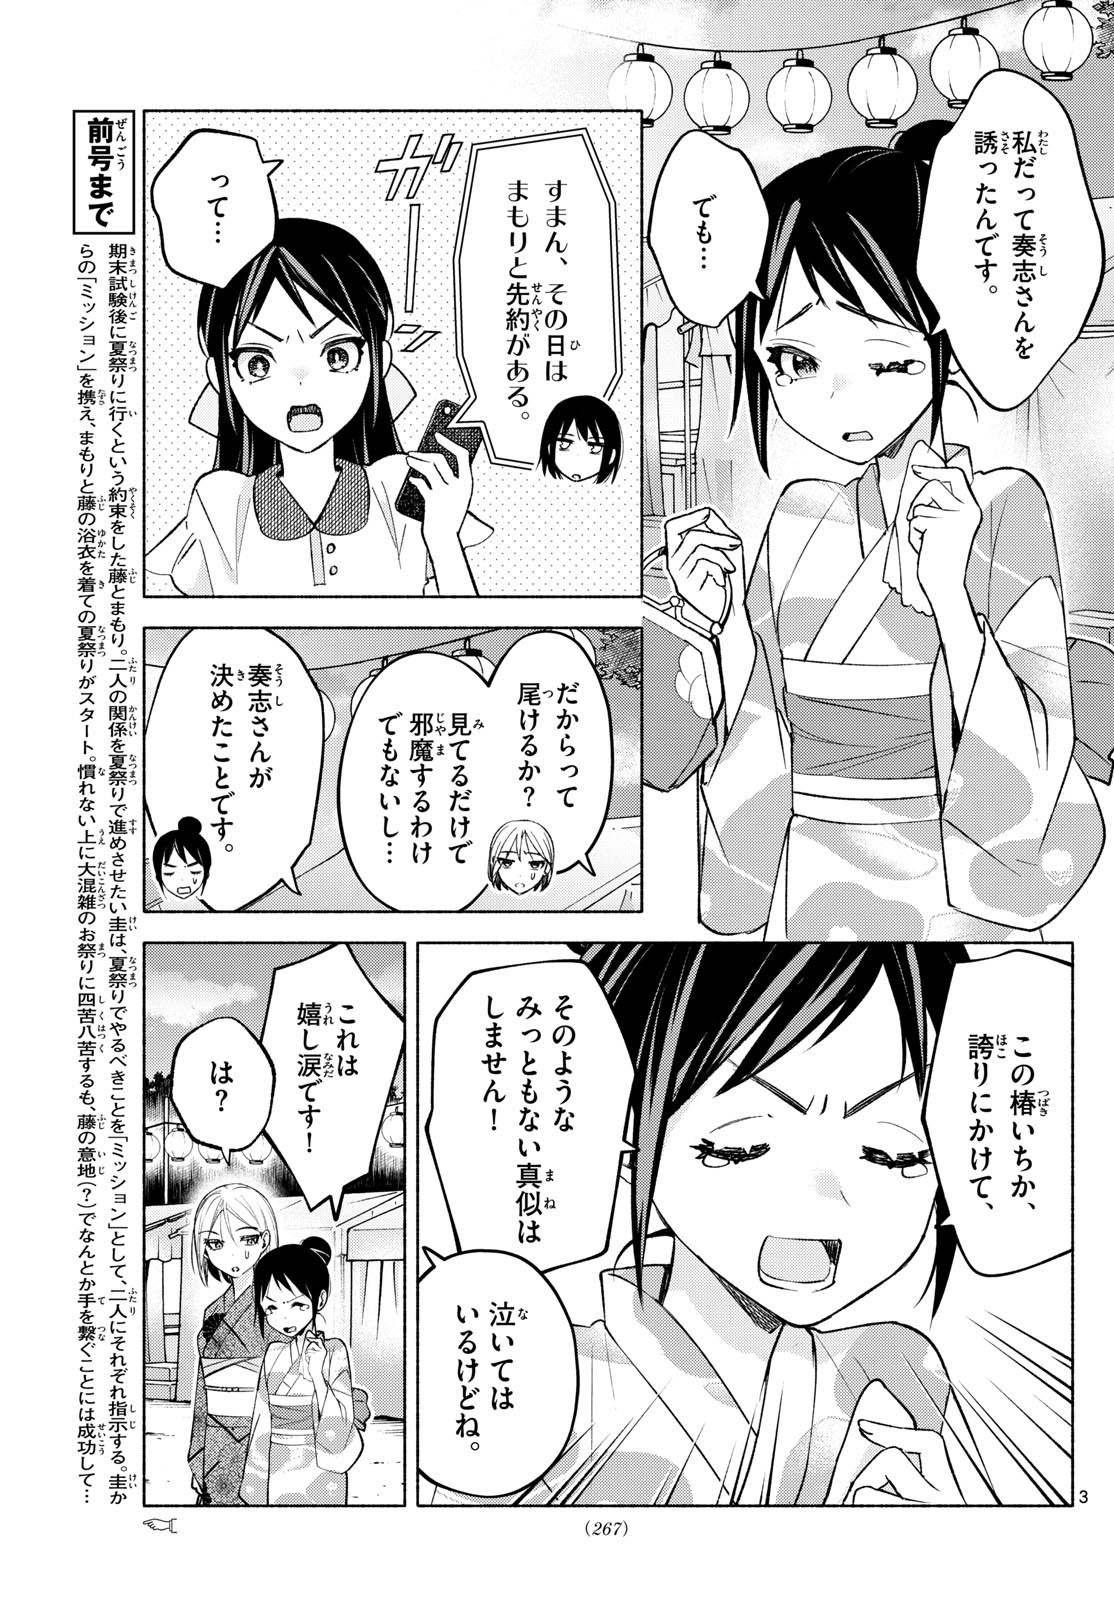 Kimi to Warui Koto ga Shitai - Chapter 046 - Page 3